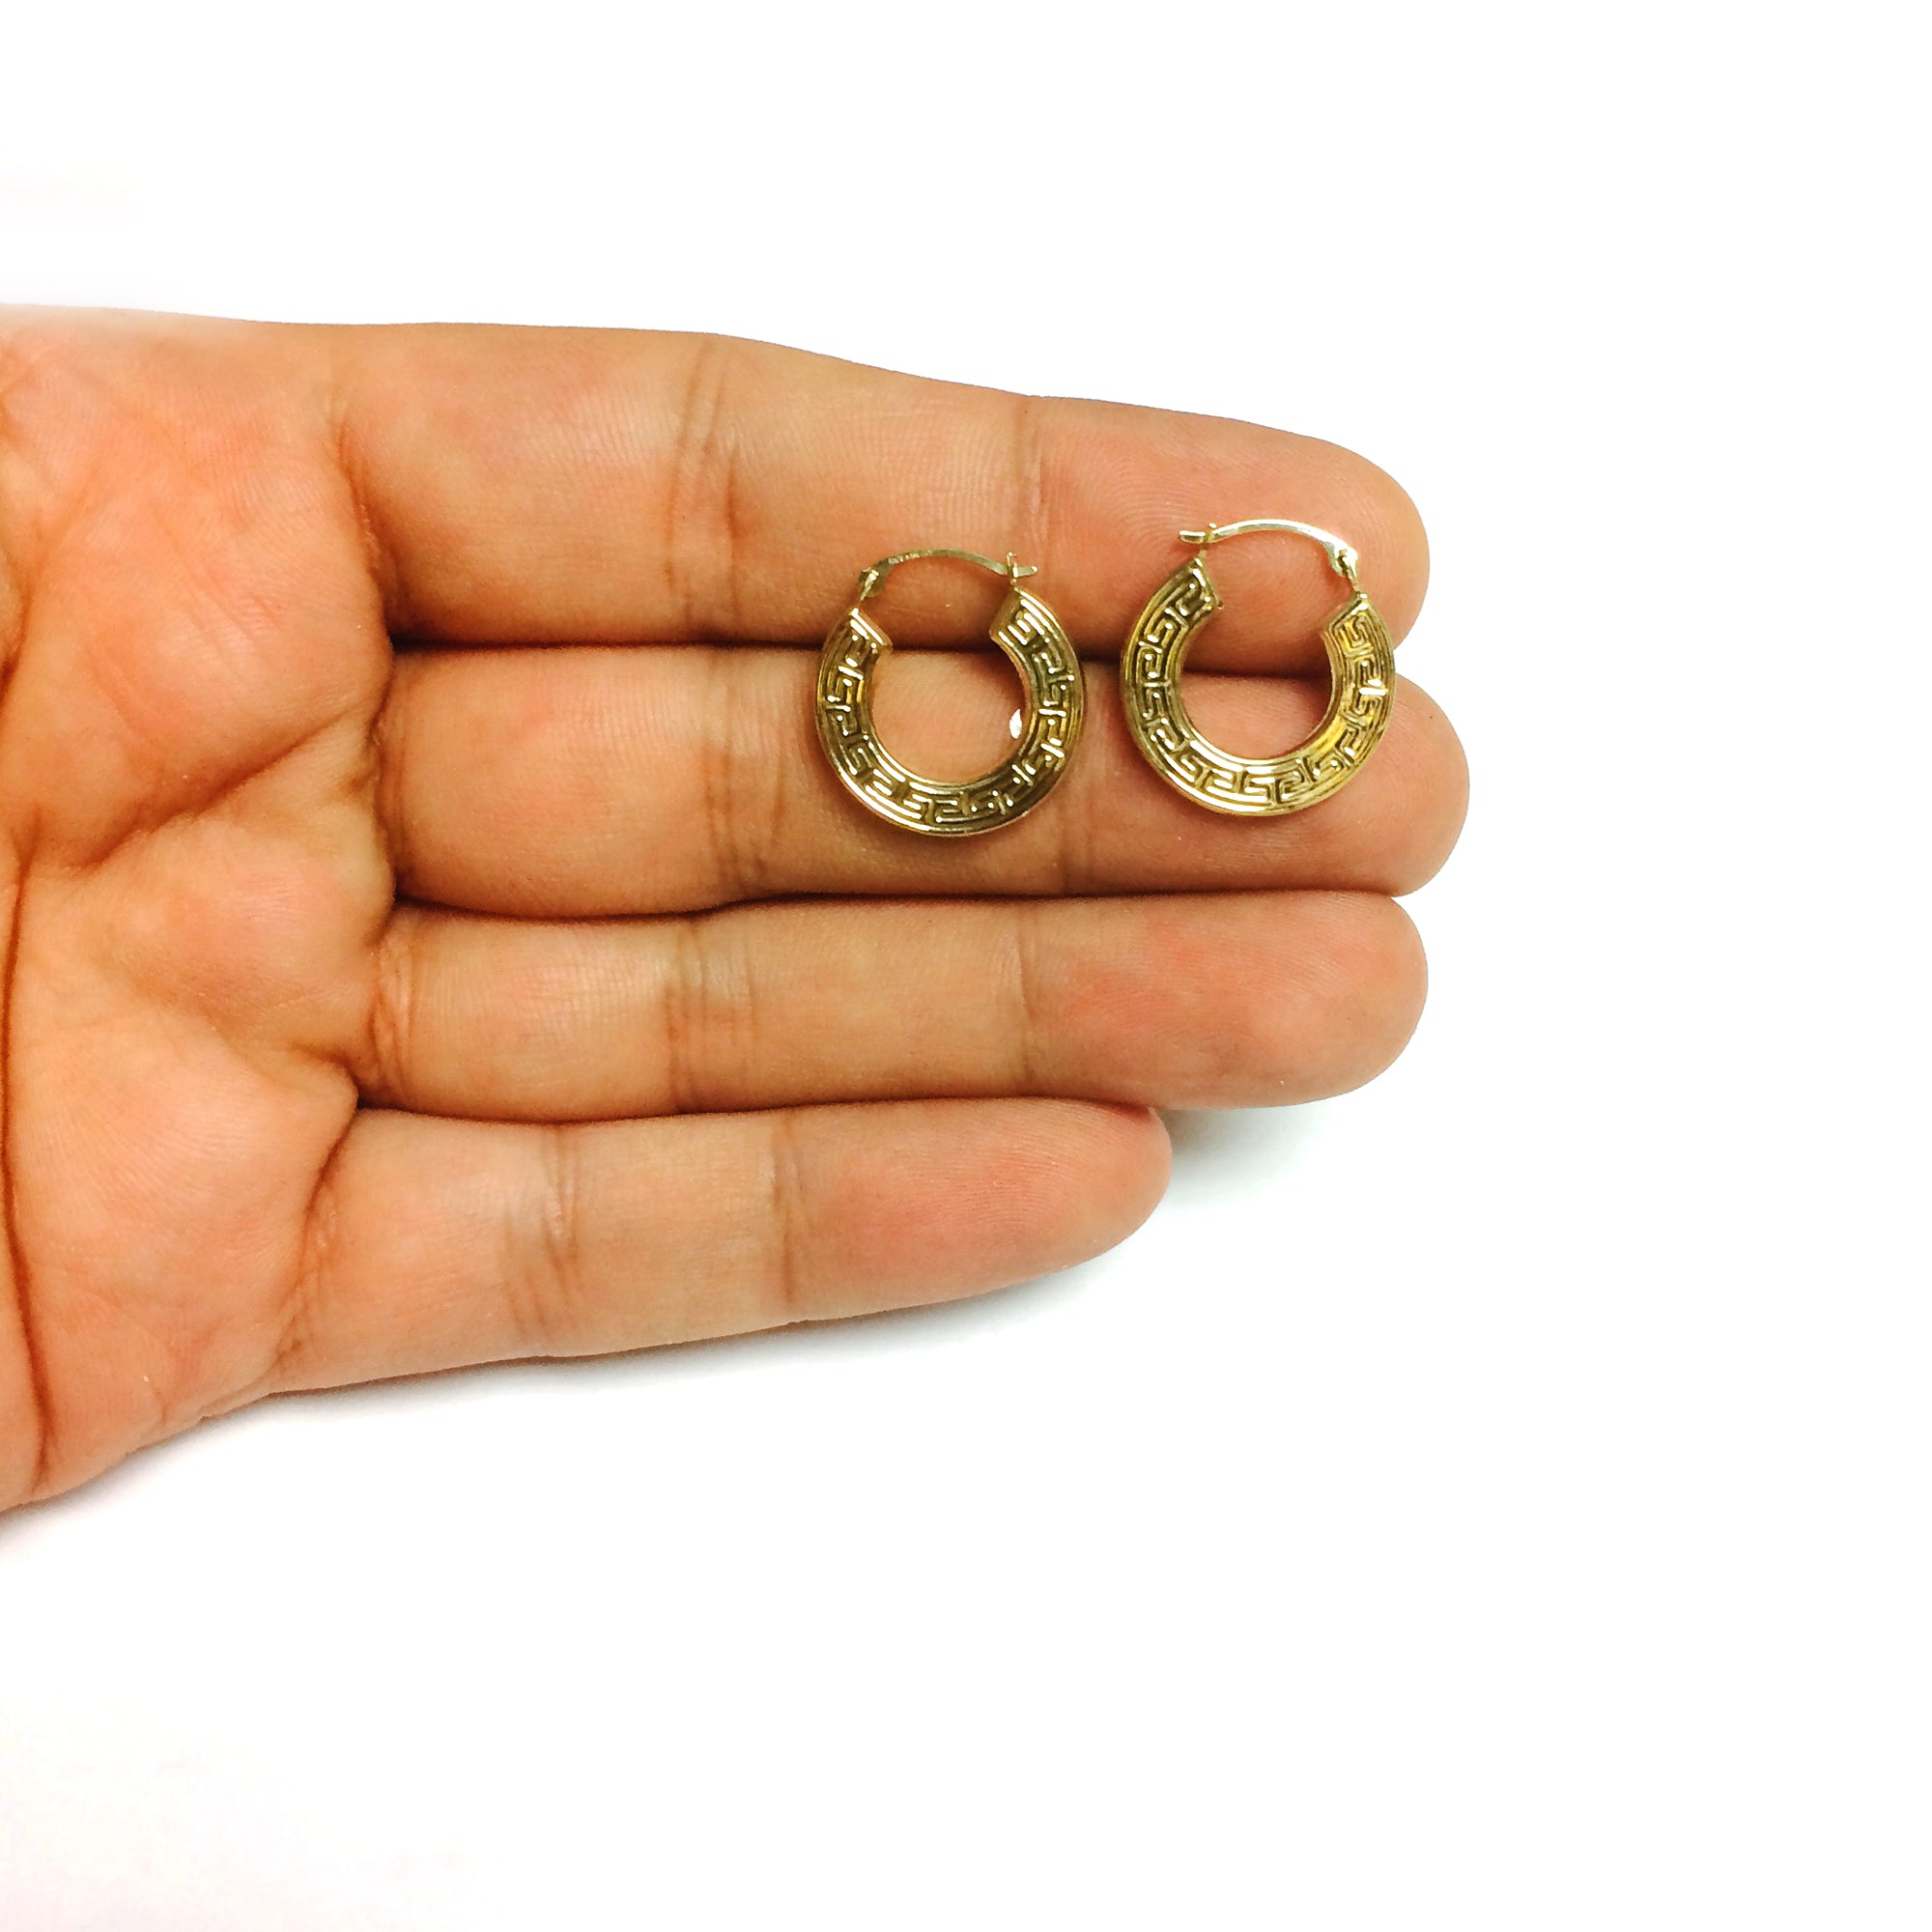 14K gult guld runda grekiska nyckelbågeörhängen, diameter 15 mm fina designersmycken för män och kvinnor